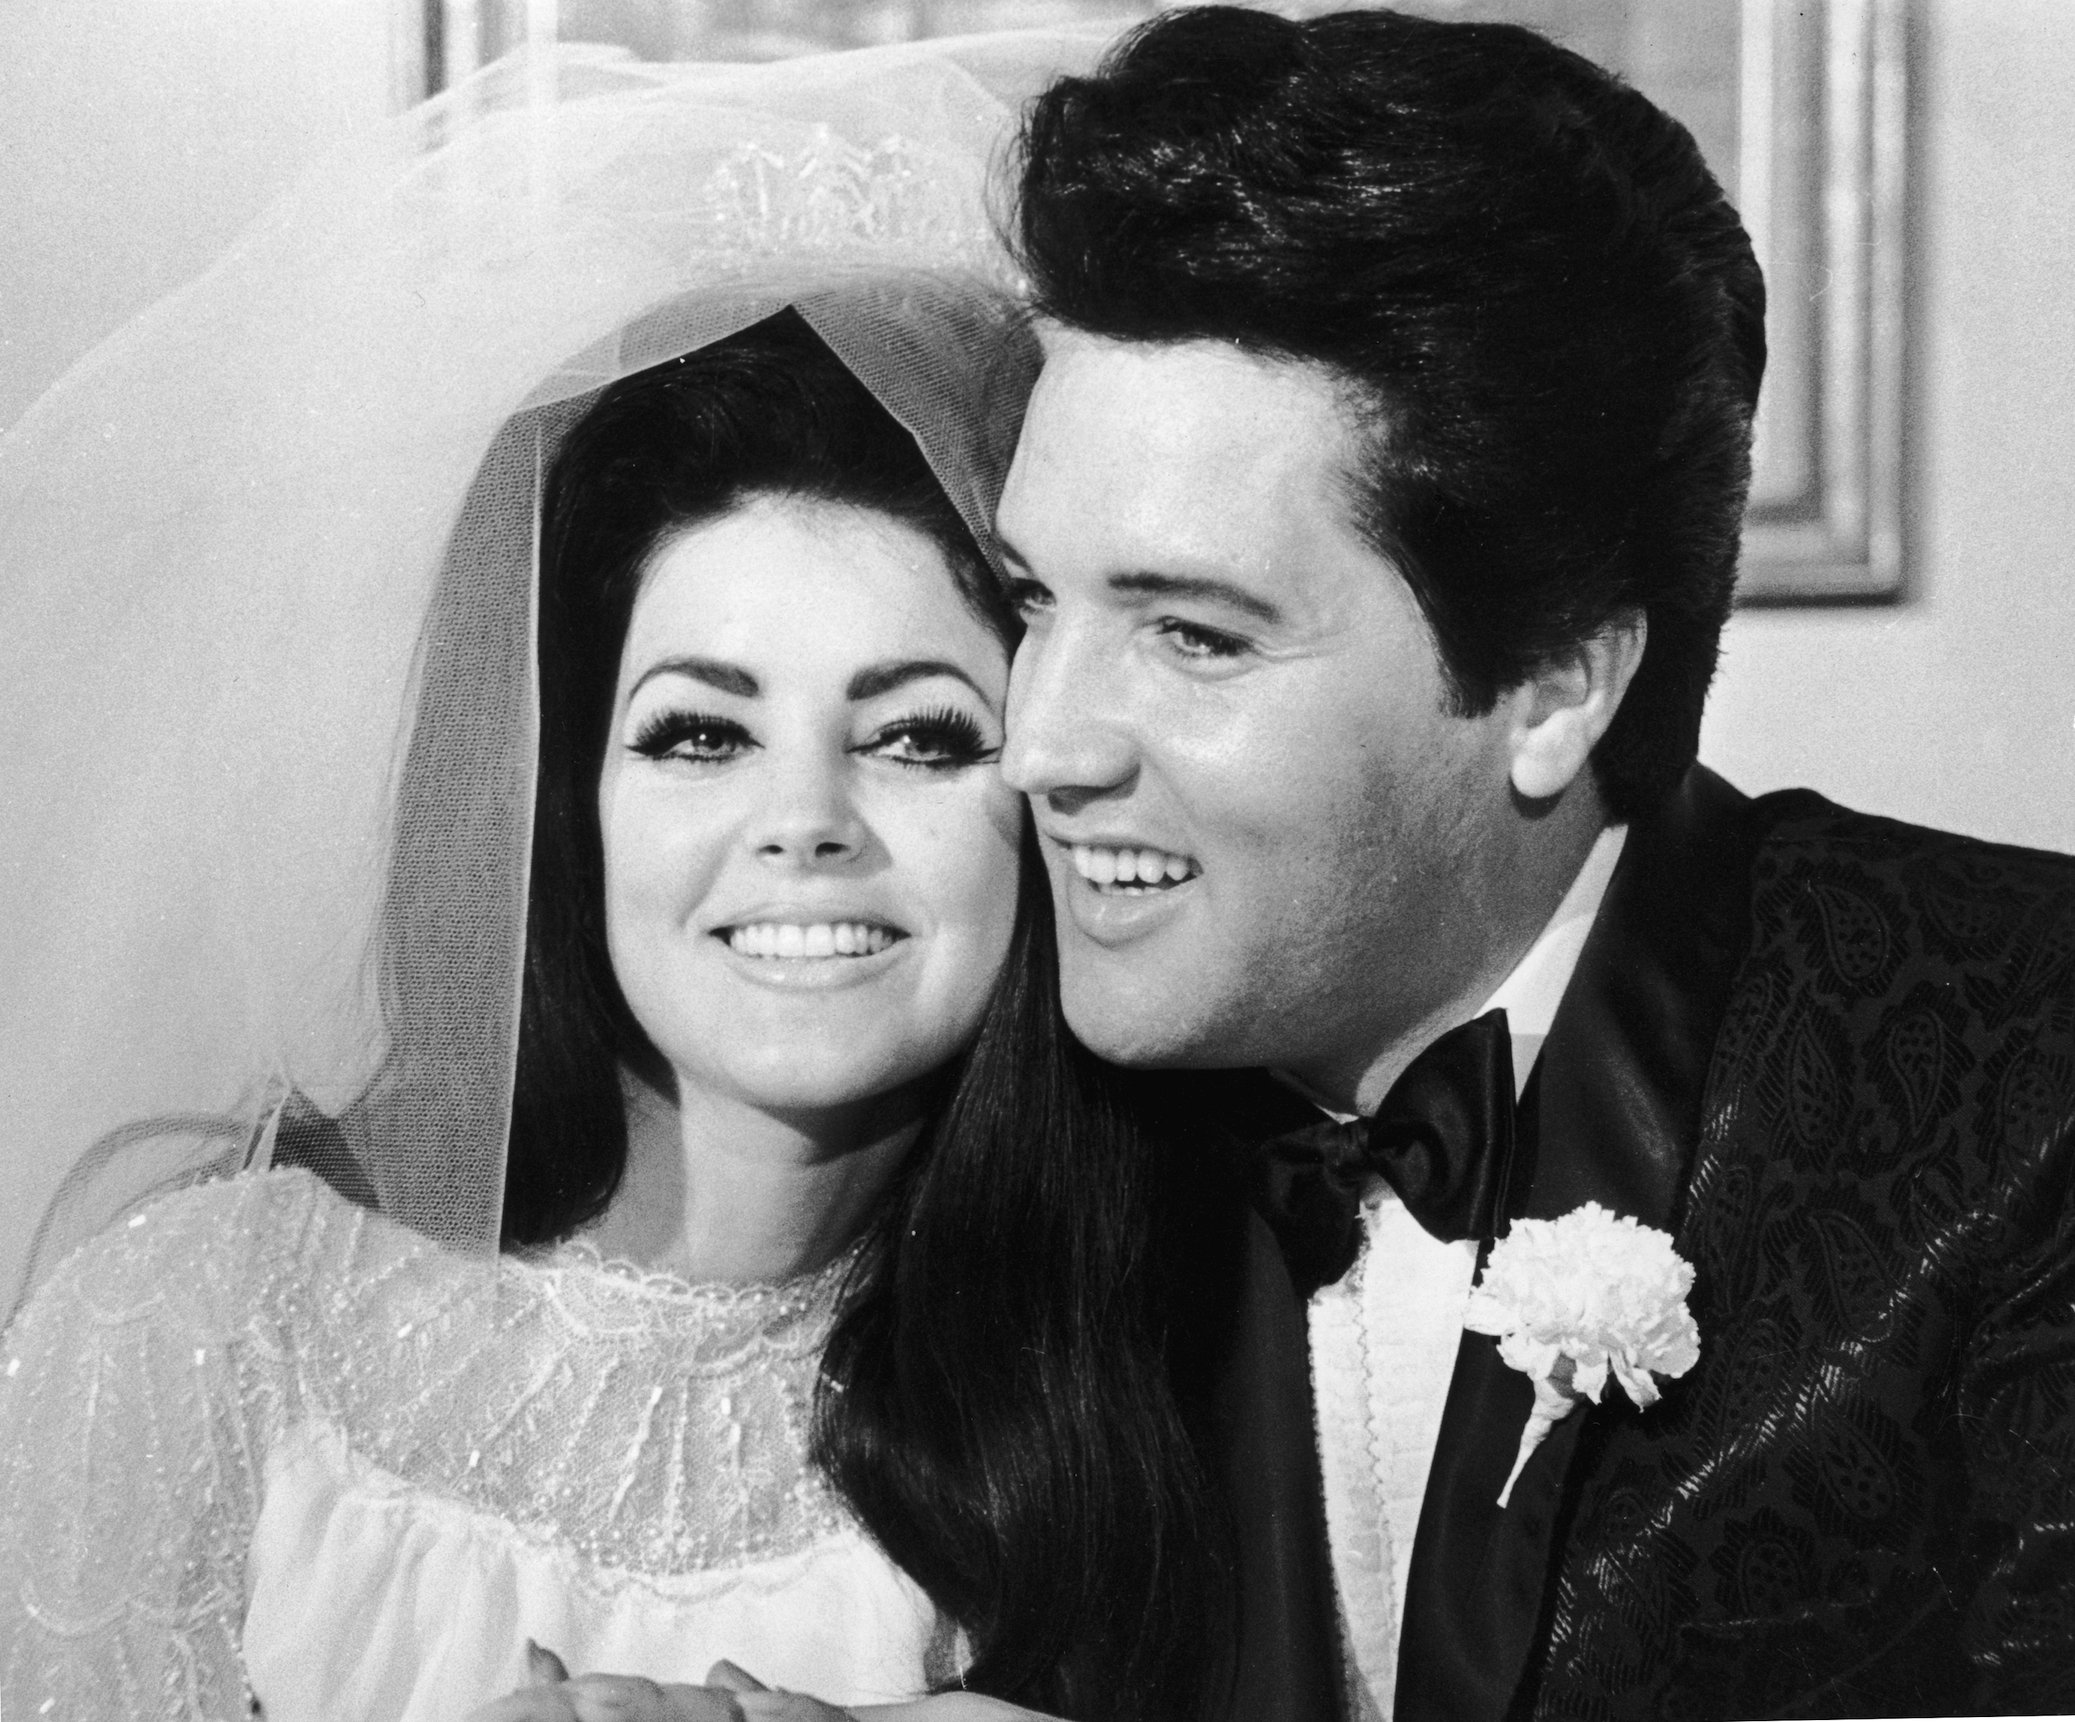 Elvis Presley and his wife, Priscilla Presley